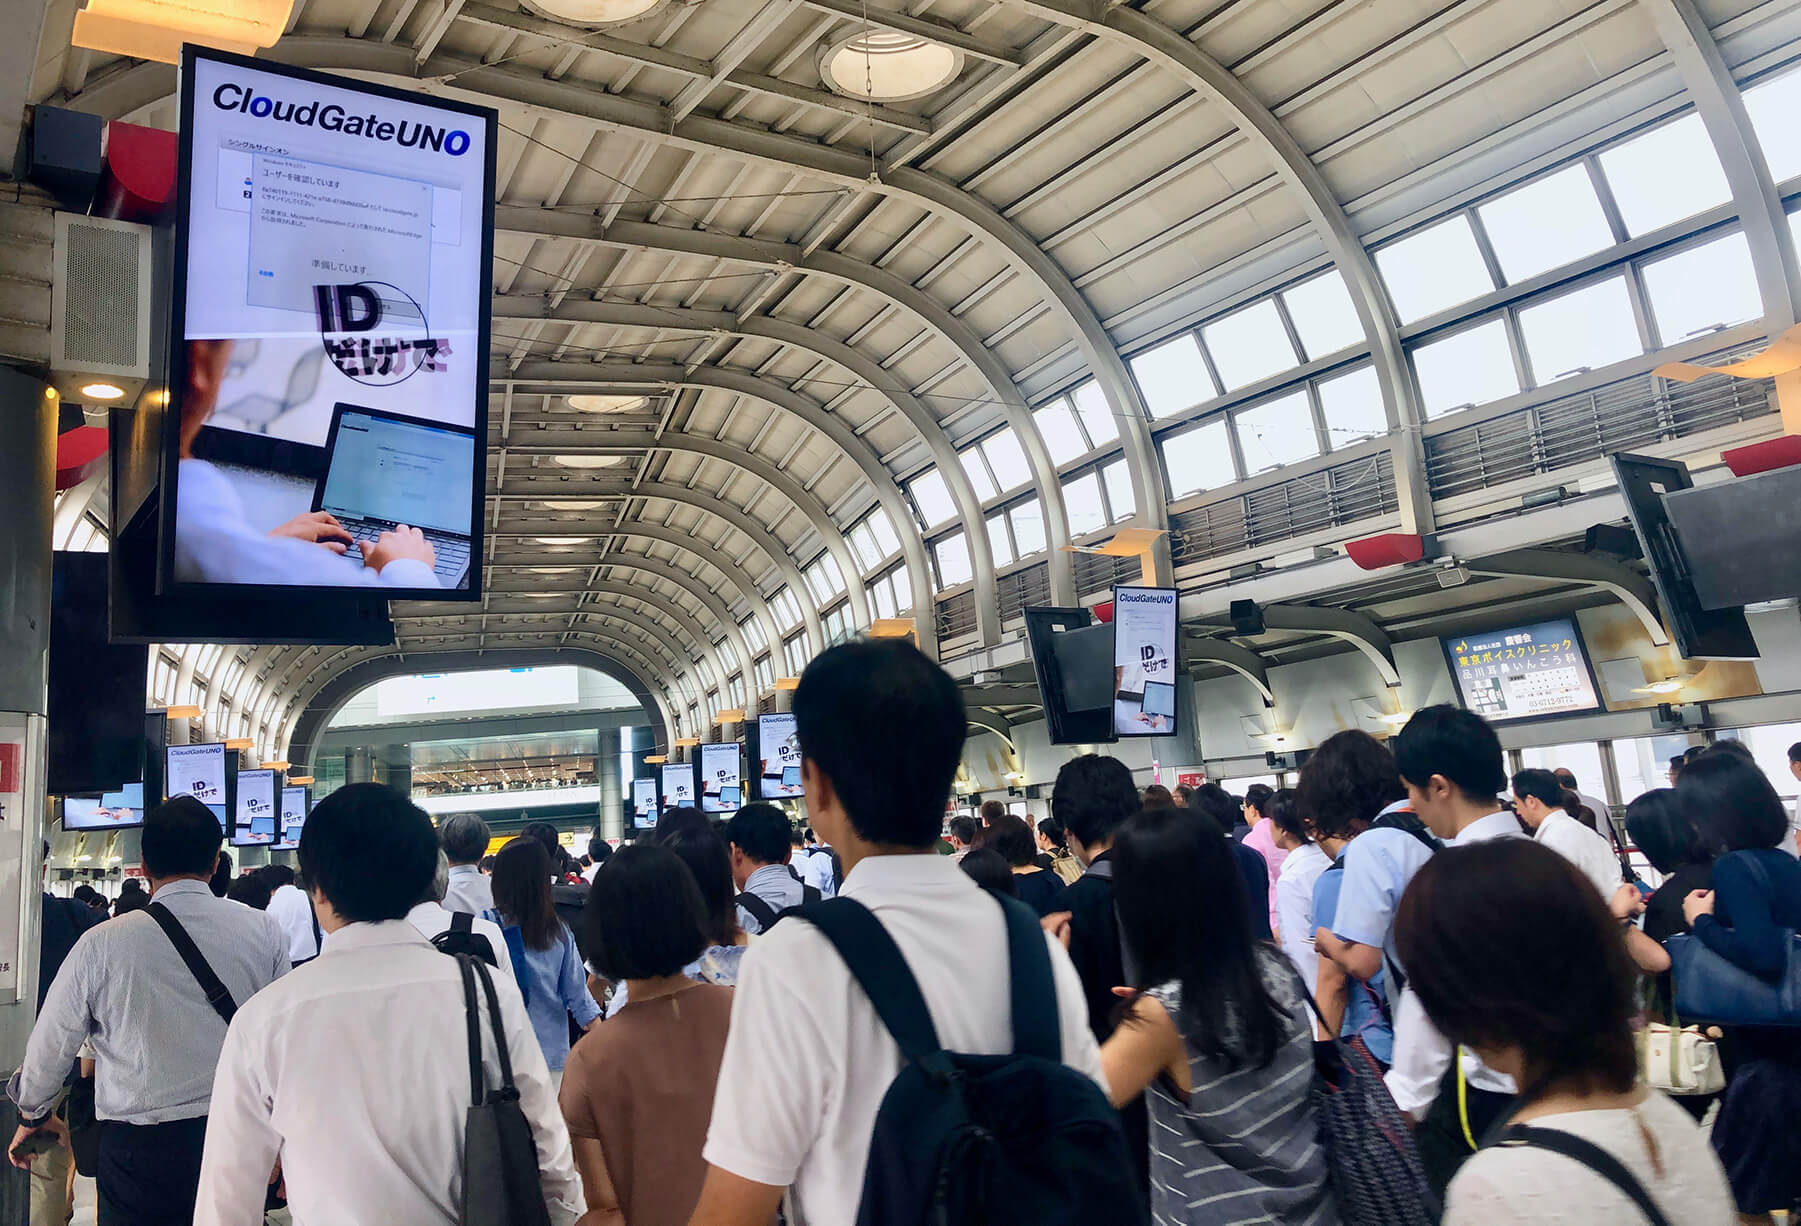 パスワードレス認証PR品川駅デジタルサイネージ広告 (Passwordless authentication PR Shinagawa Station)